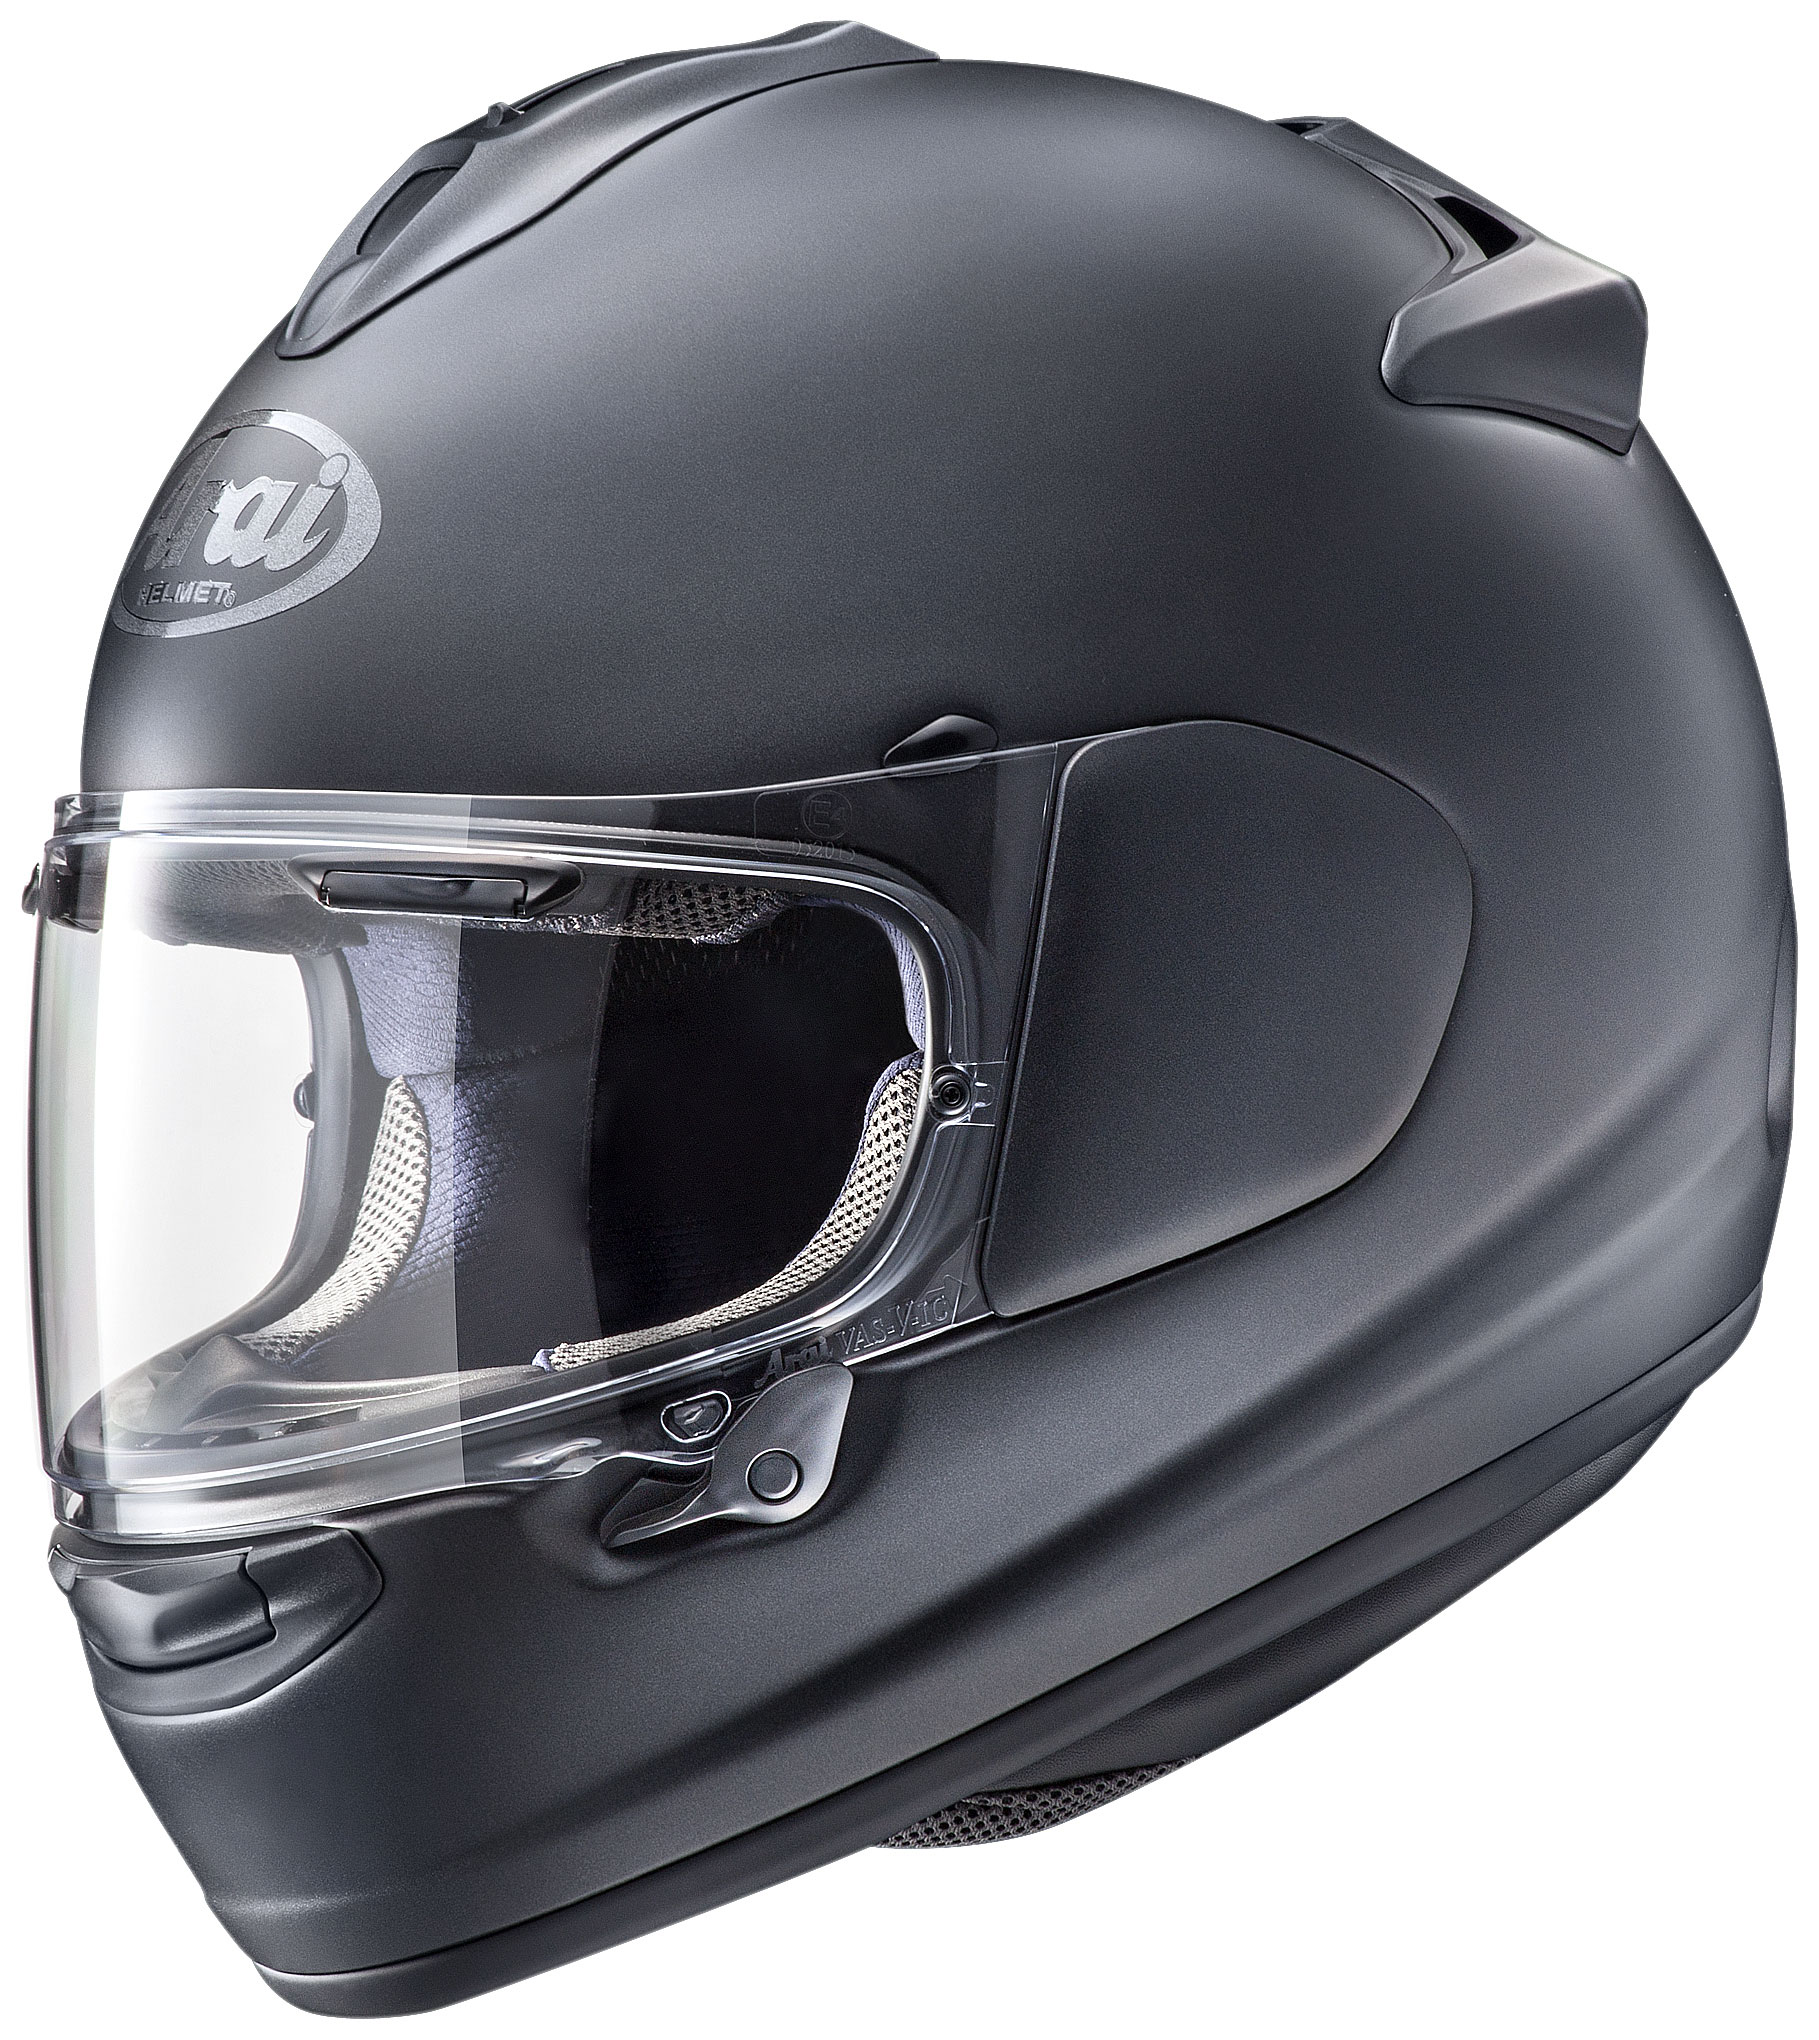 アライ】フルフェイスヘルメットに新モデル「VECTOR-X」が登場| バイク 